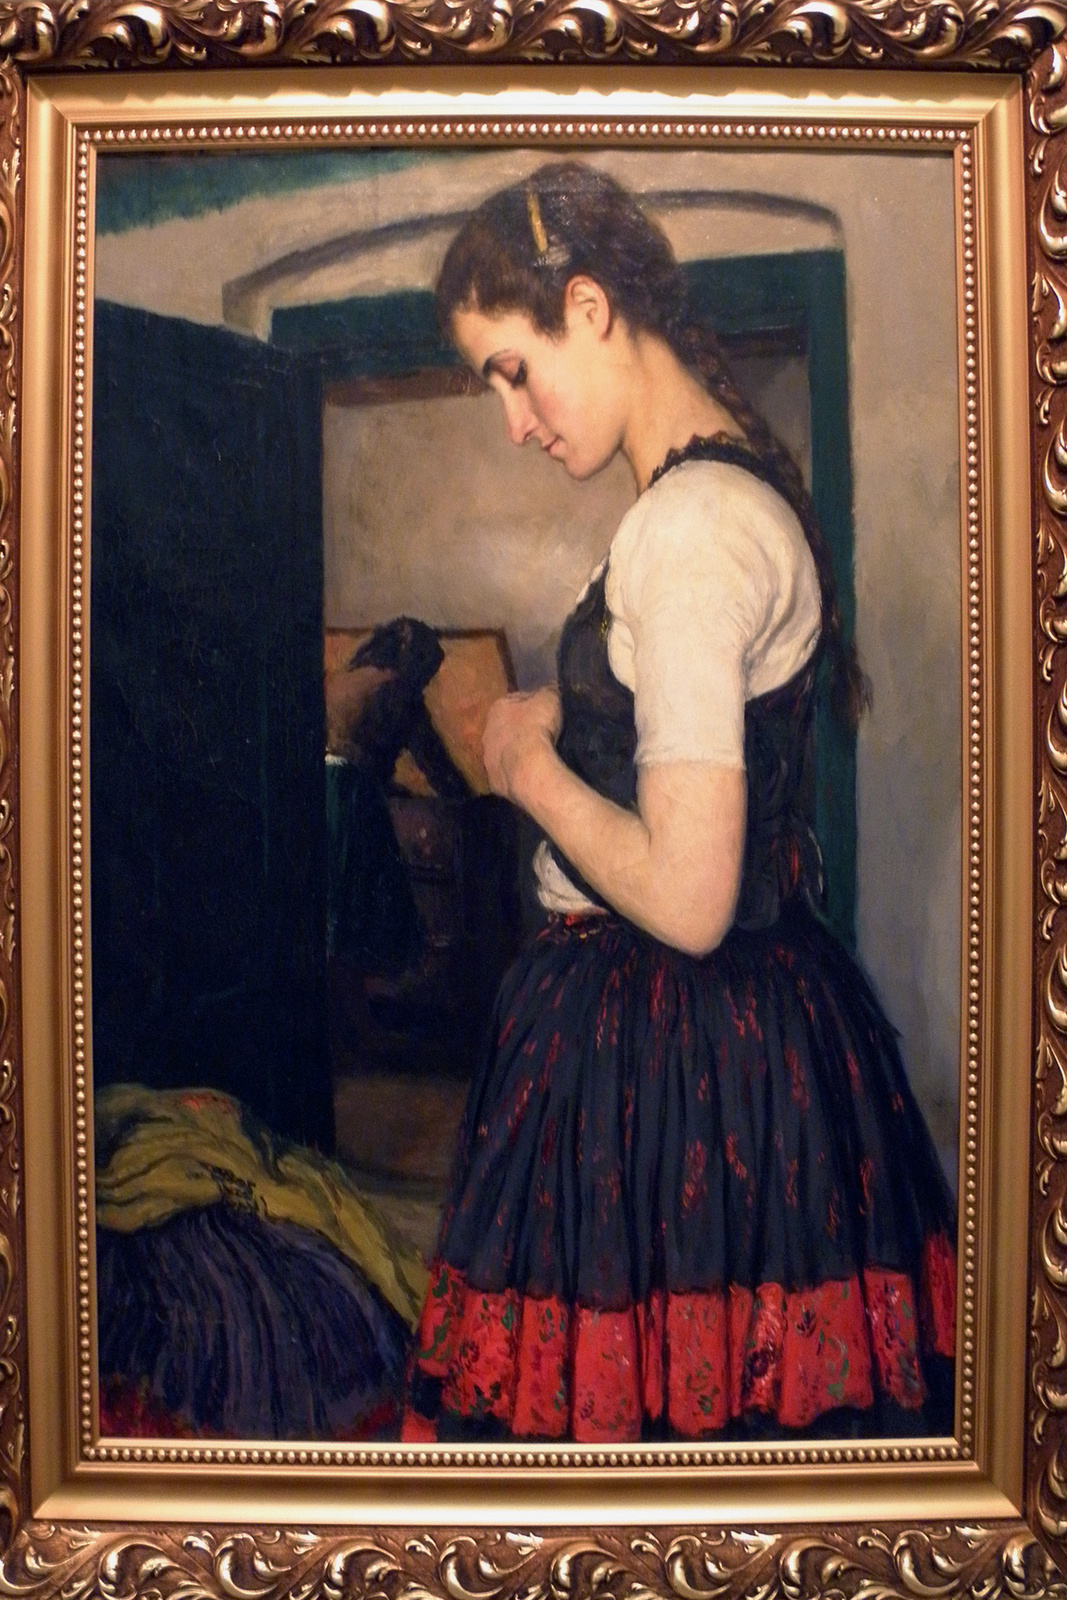 Öltözködő lány, Glatz festmény